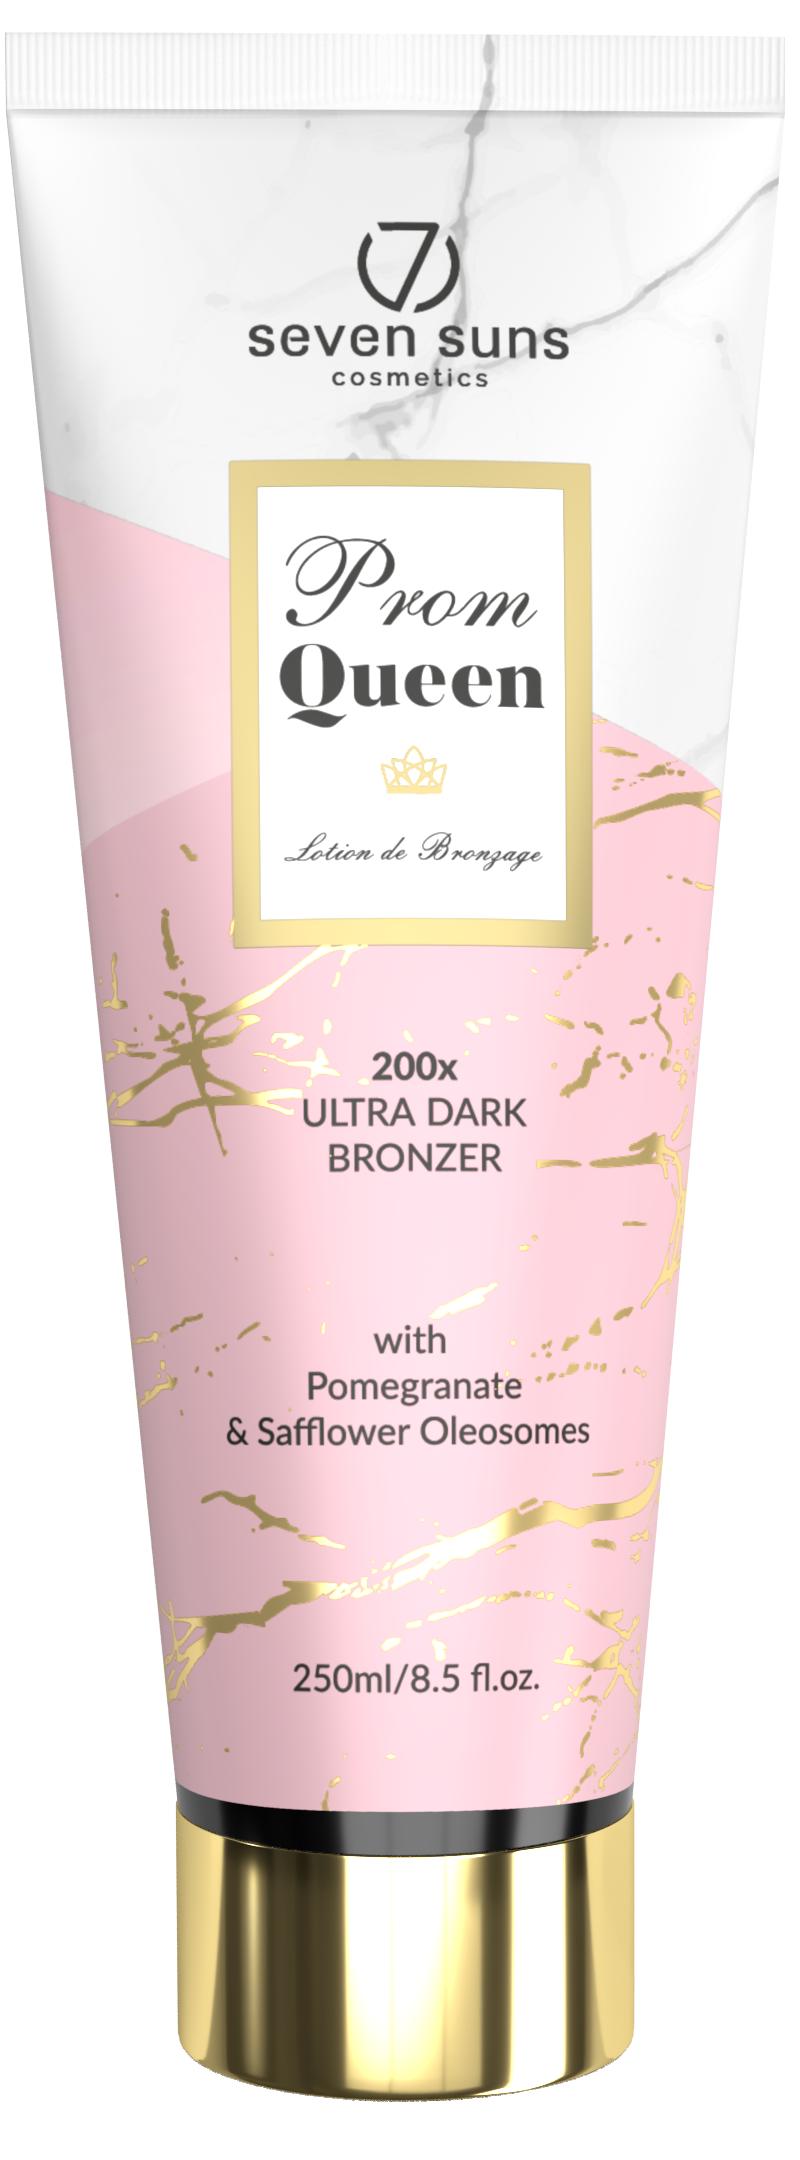 Prom Queen dark bronzer tube